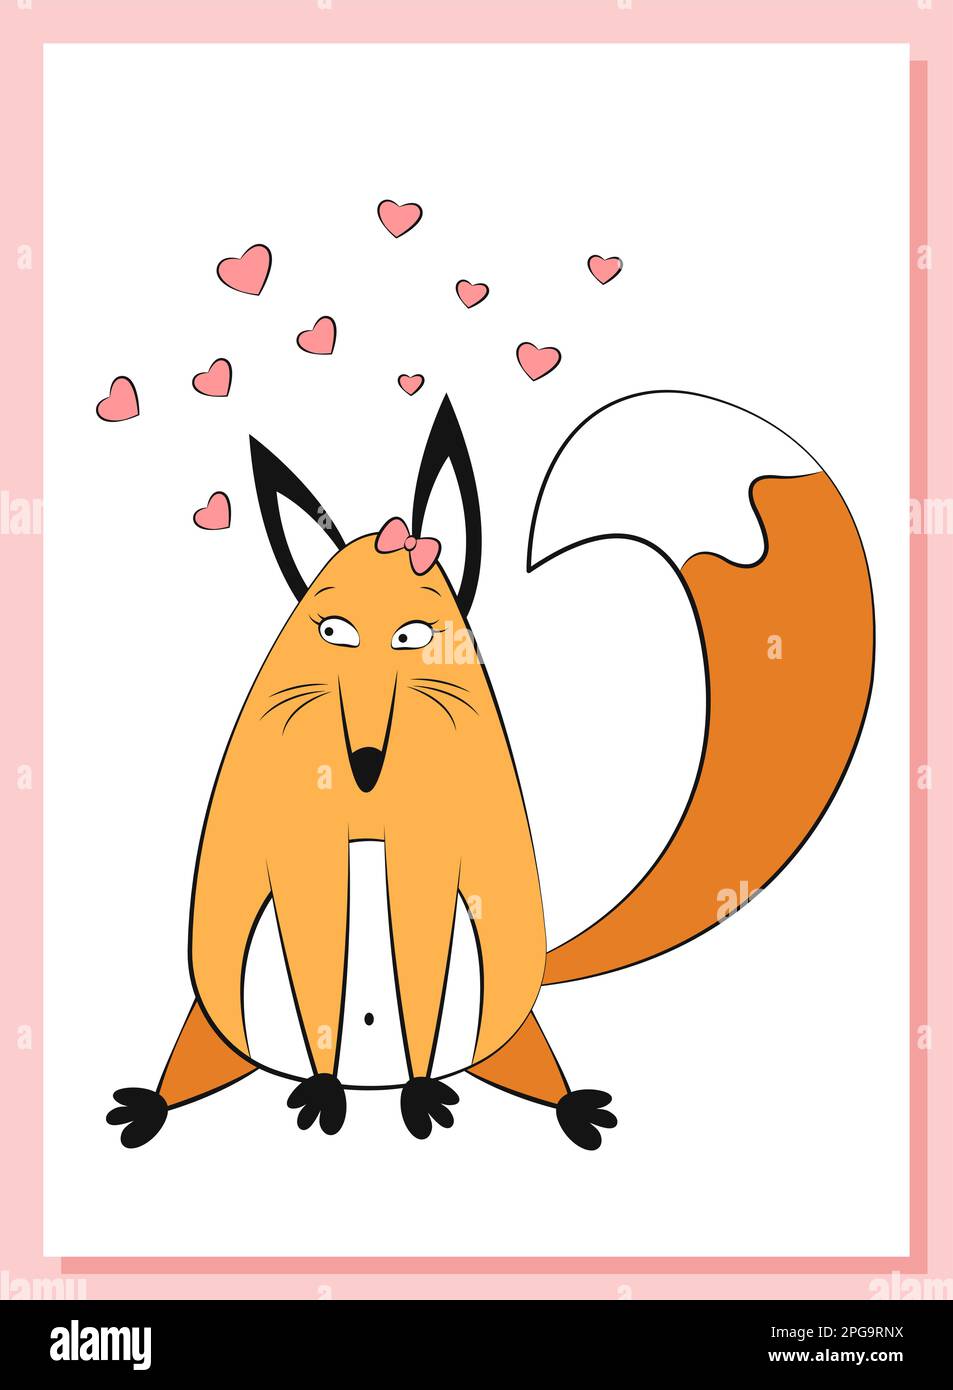 Kreative, niedliche Geschenkkarte zum Valentinstag. Ein lustiger, fetter Fuchs, der sich in rosa Herzen verliebt. Frauenfuchs mit flauschigem Schwanz. Gemütliche Kinderzeichnung einer Anim Stock Vektor